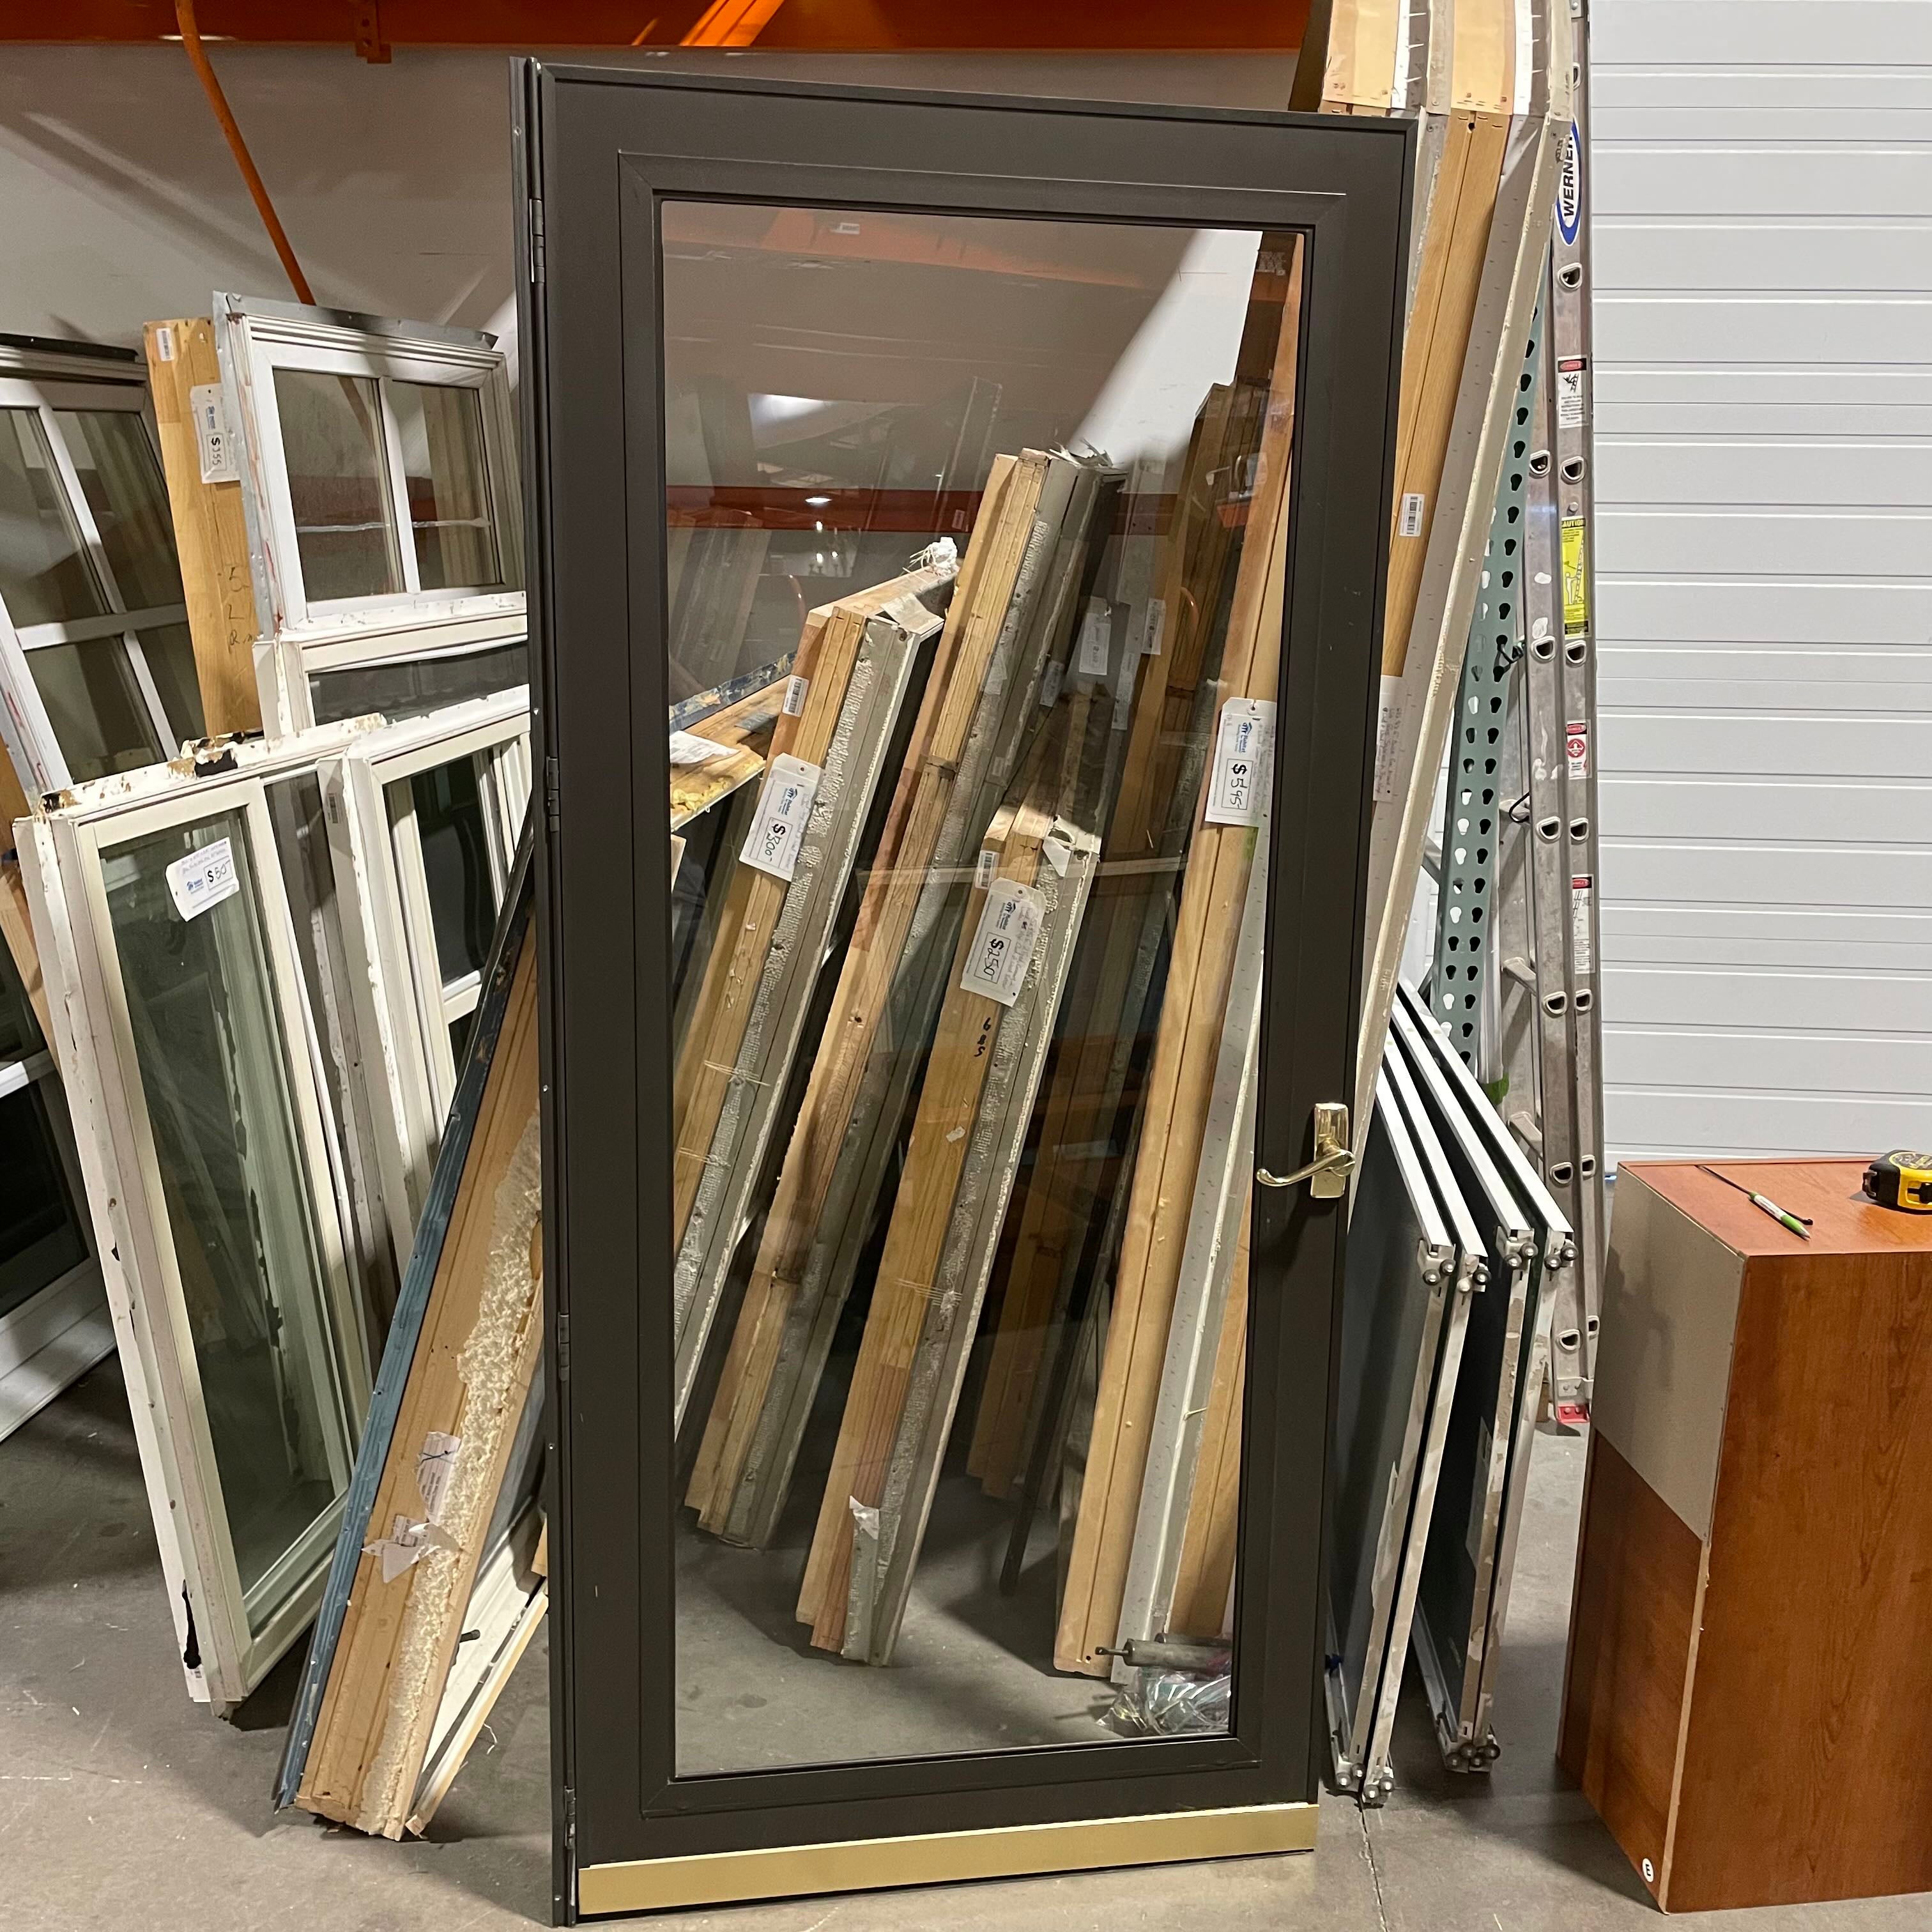 35.25"x 79.5"x 1" Dark Brown Metal with Single Glass Panel Exterior Storm Door